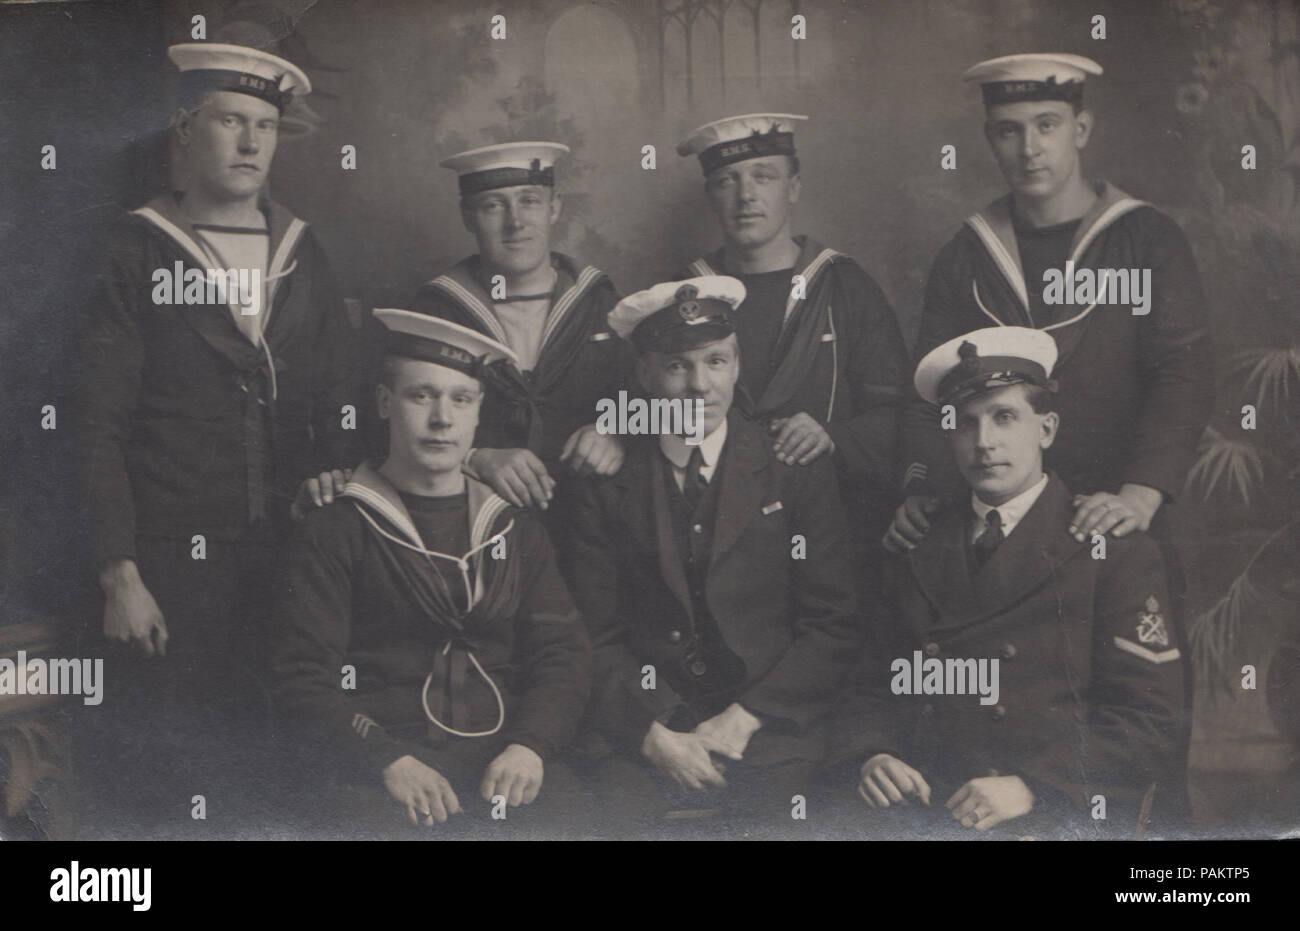 Vintage 1919 Photographie montrant les marins de la Marine royale britannique HMS Gunner Banque D'Images